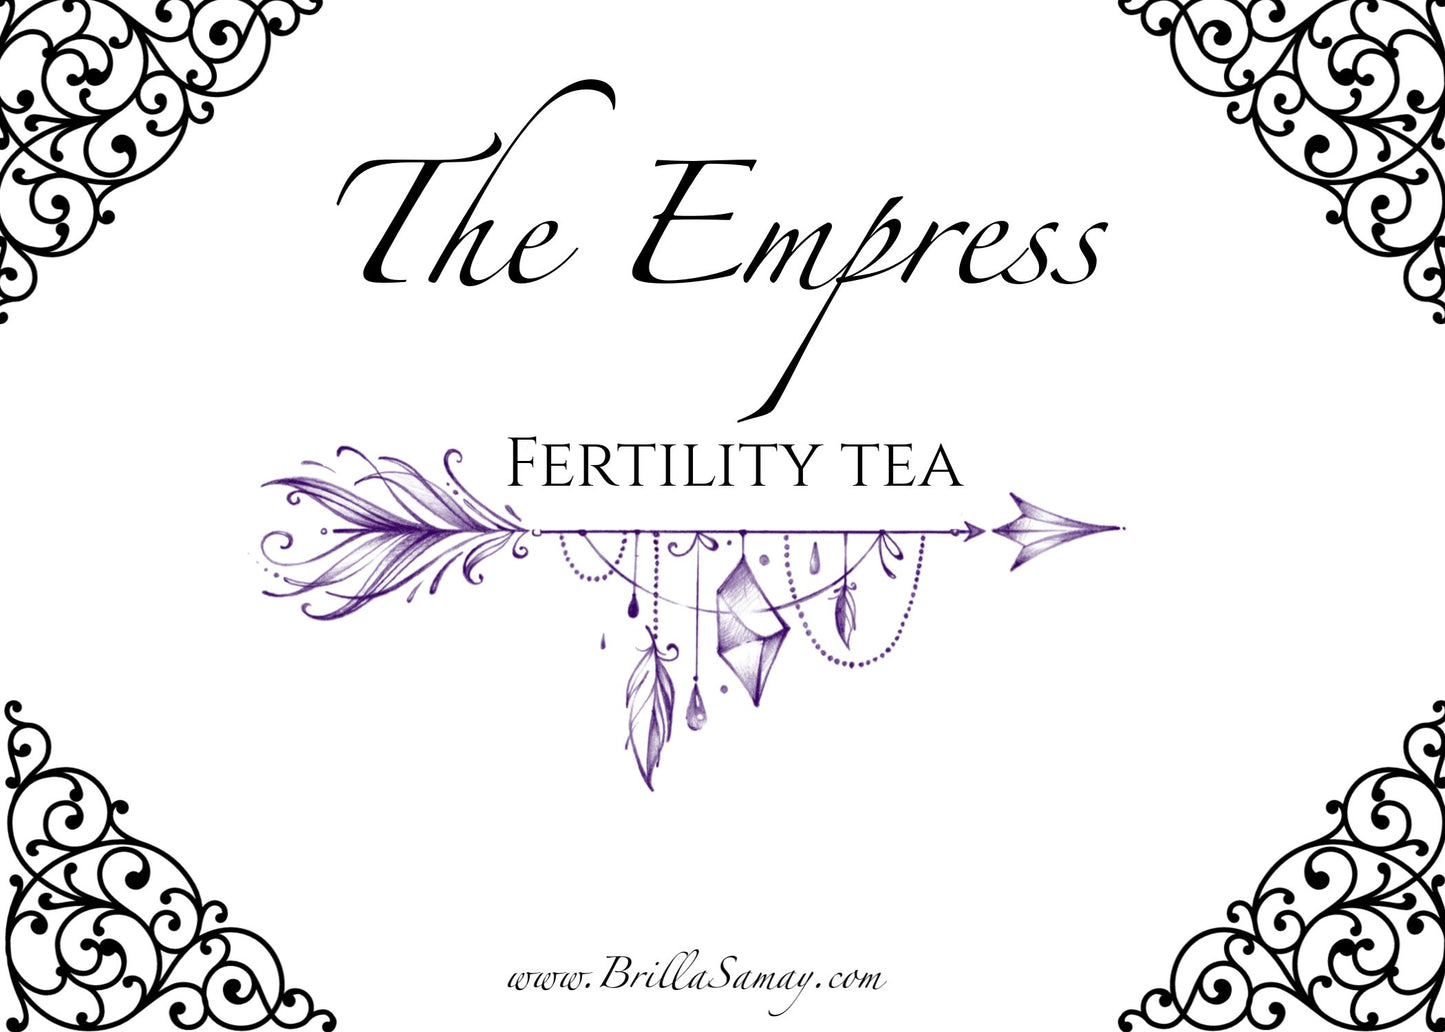 The Empress - Fertility Tea